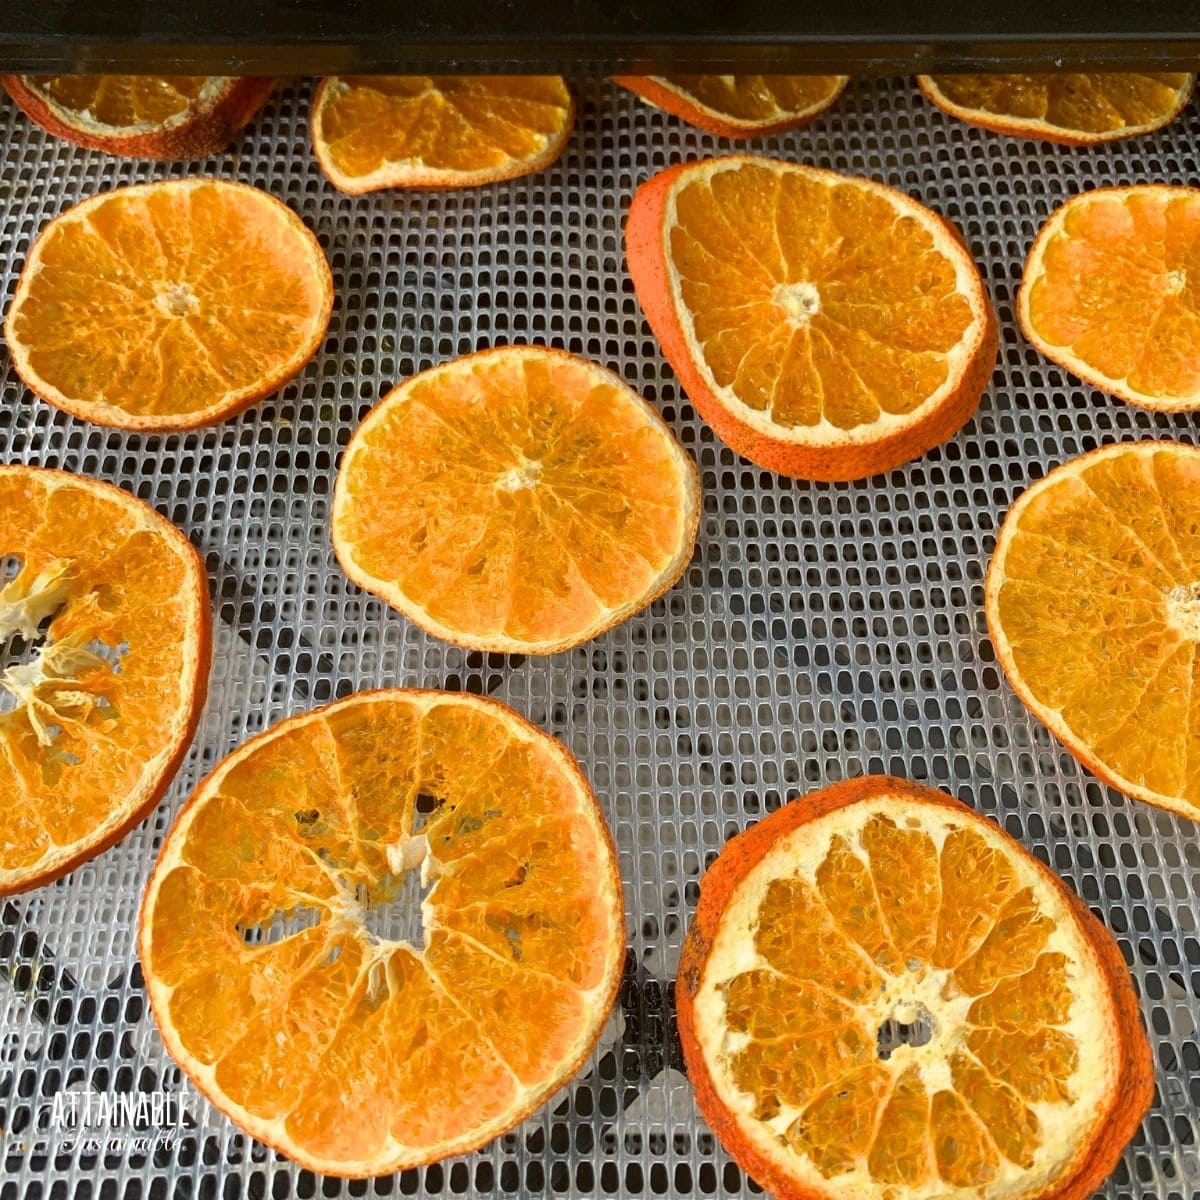 dried oranges on a dehydrator tray.